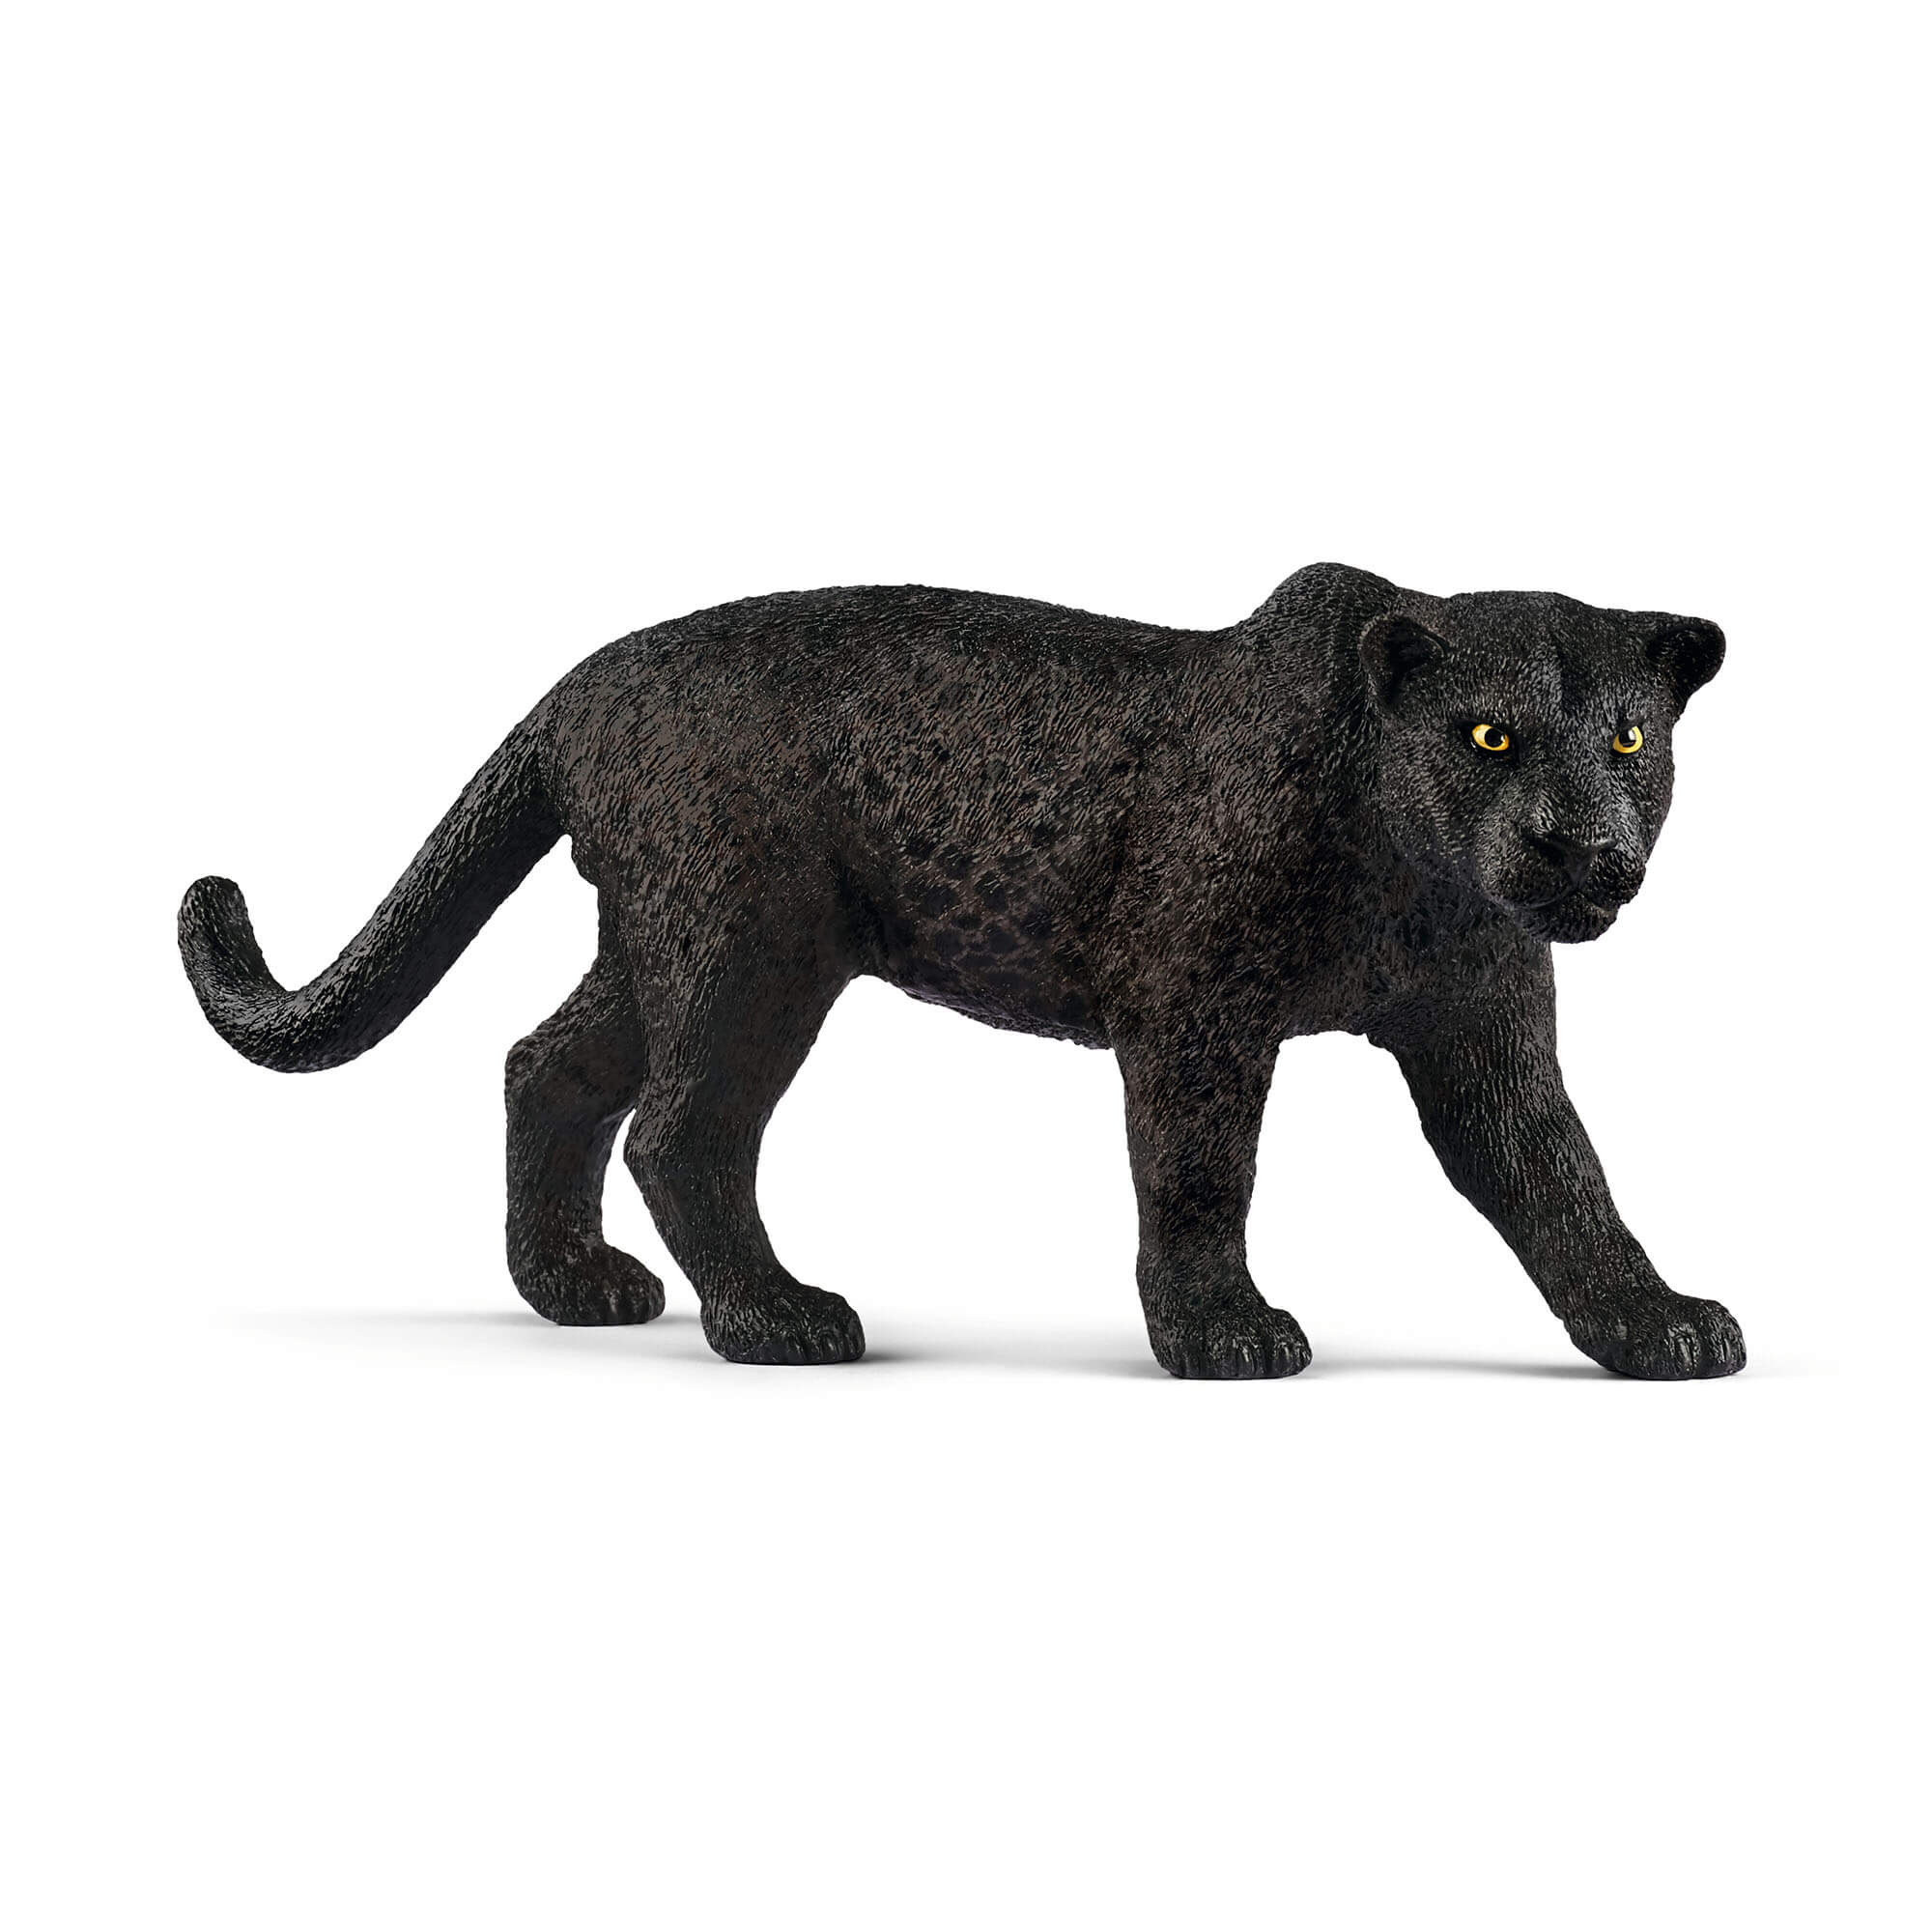 Schleich Wild Life Black Panther Animal Figure